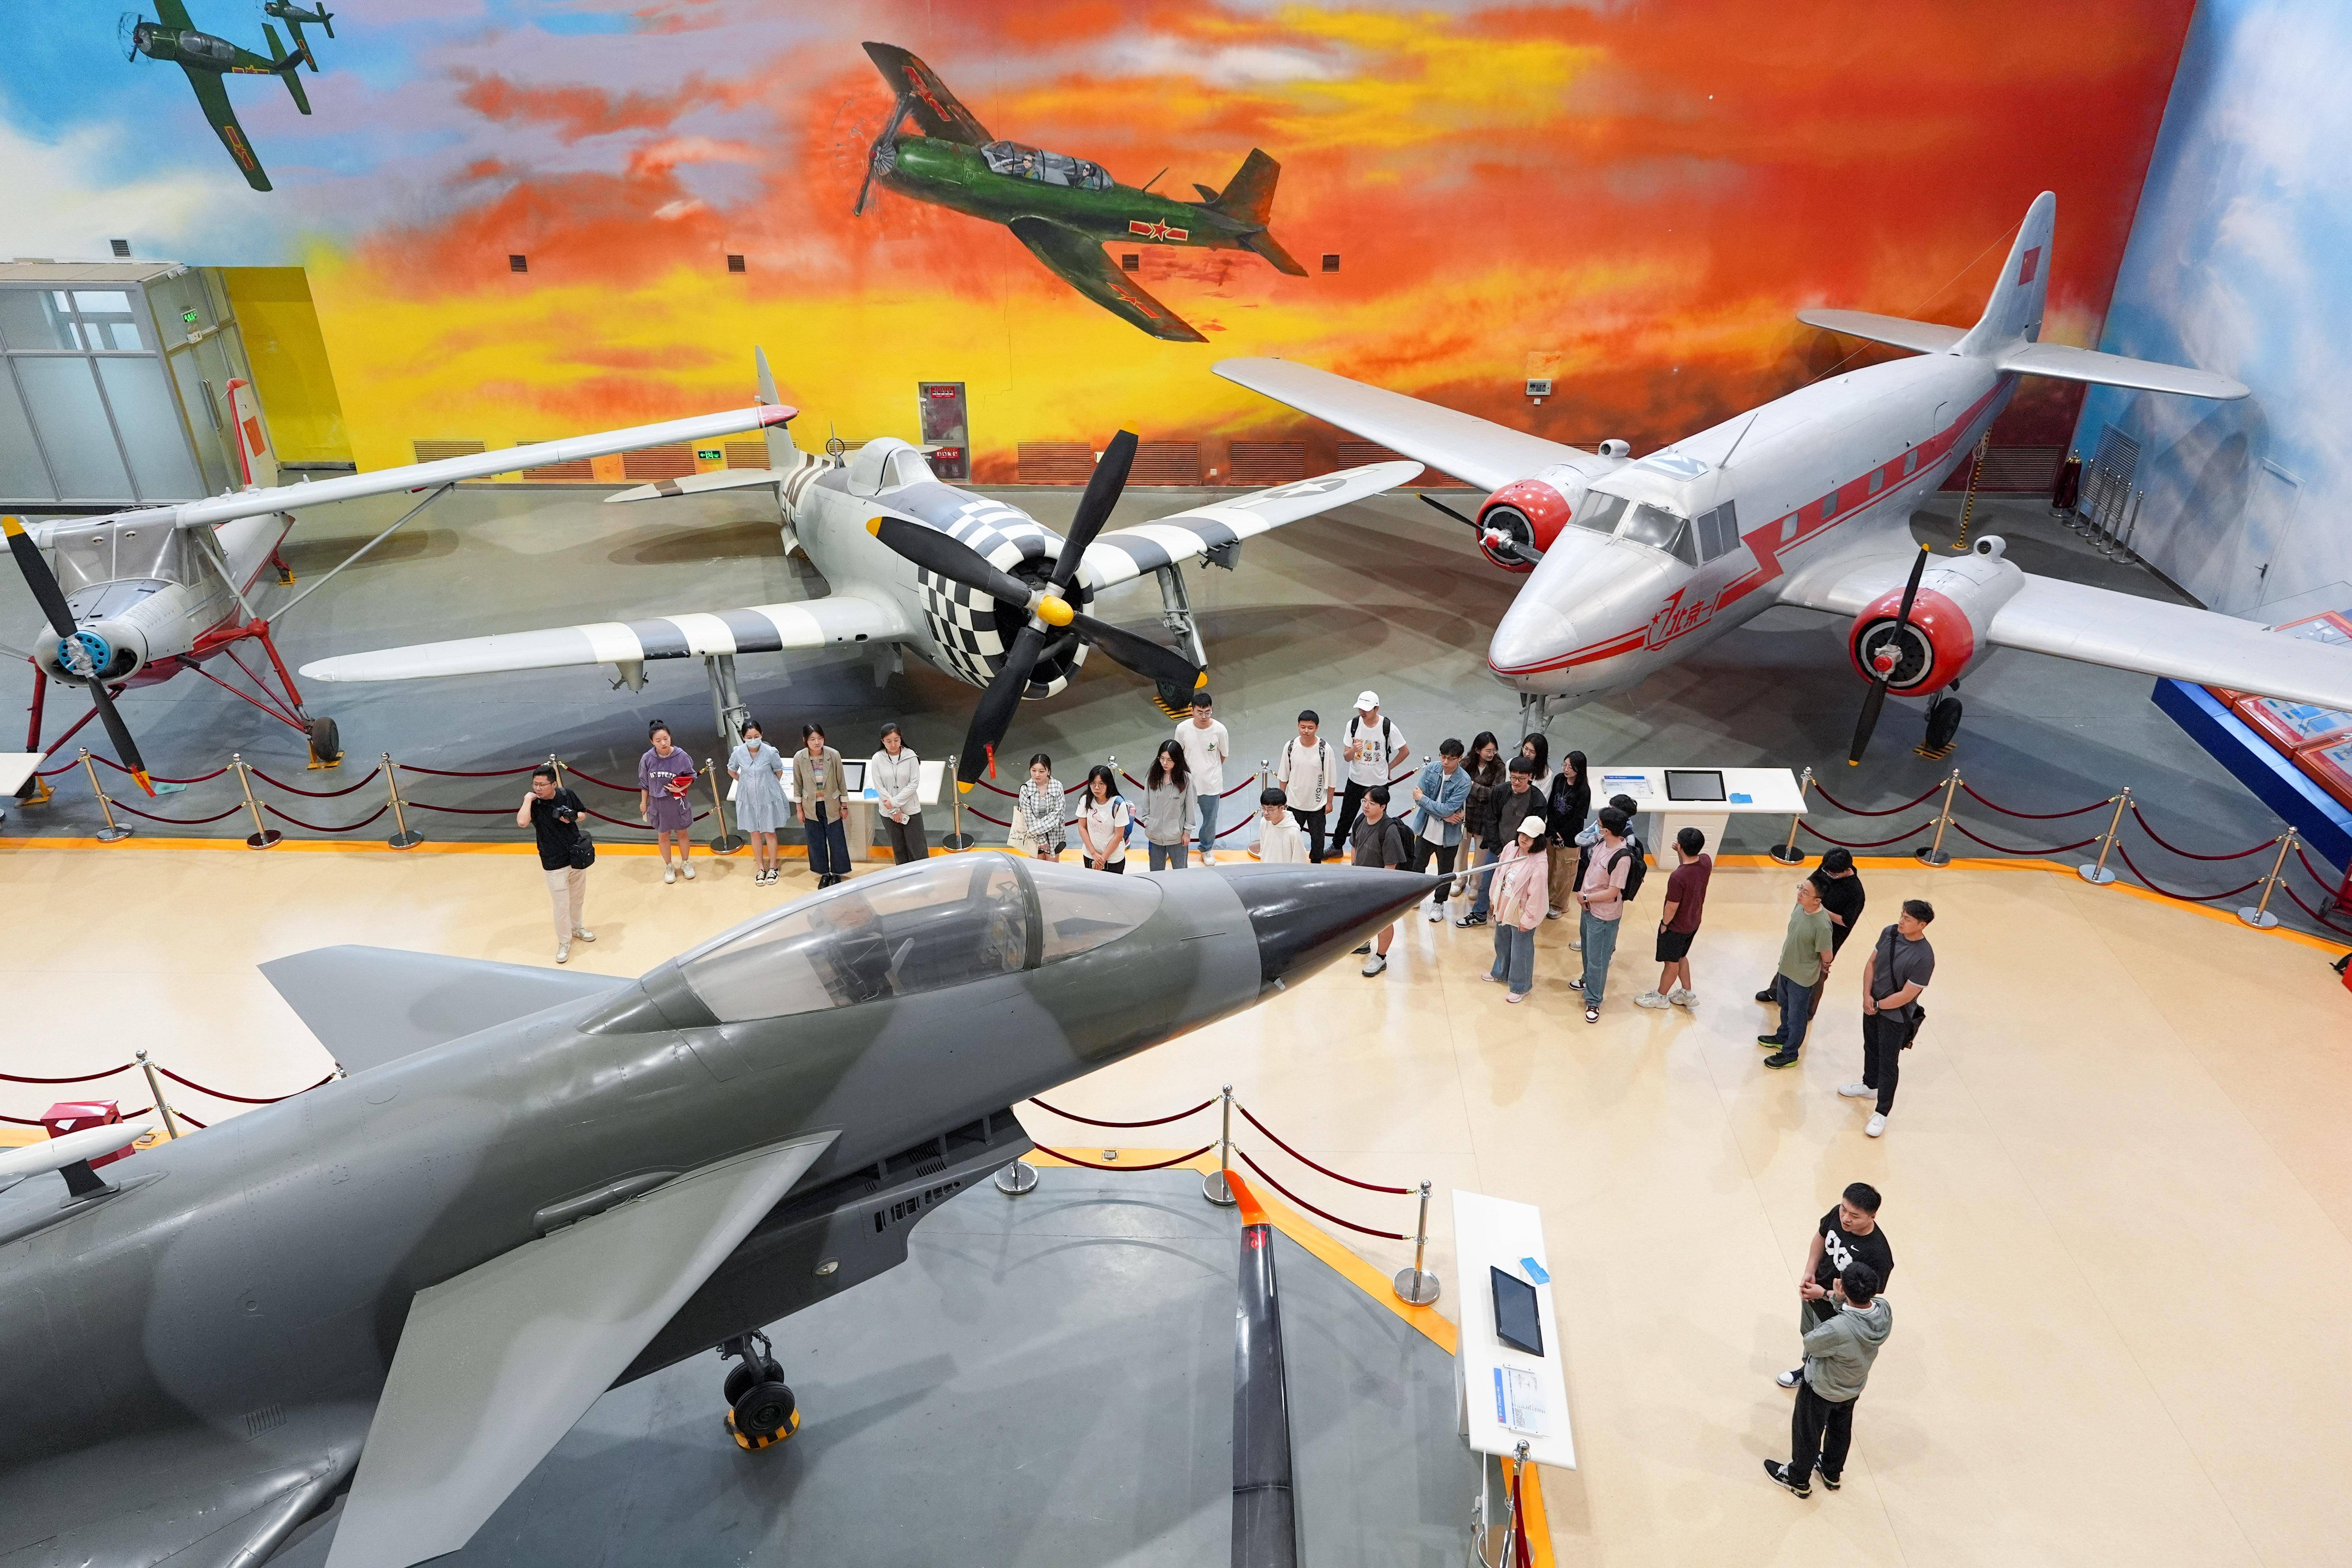 新华全媒 丨高校博物馆奇妙之旅:北京航空航天博物馆